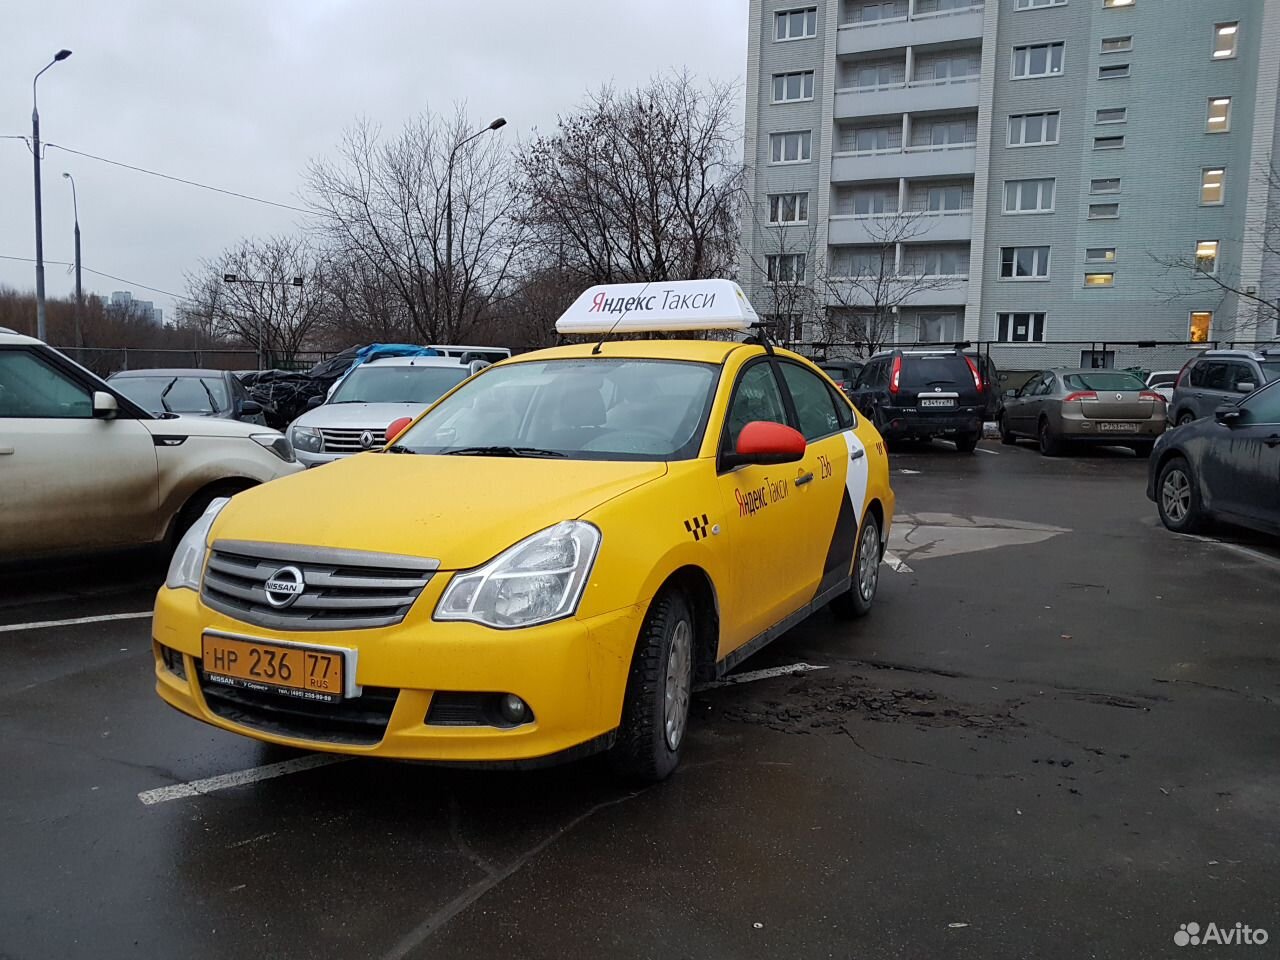 лицензия такси в москве